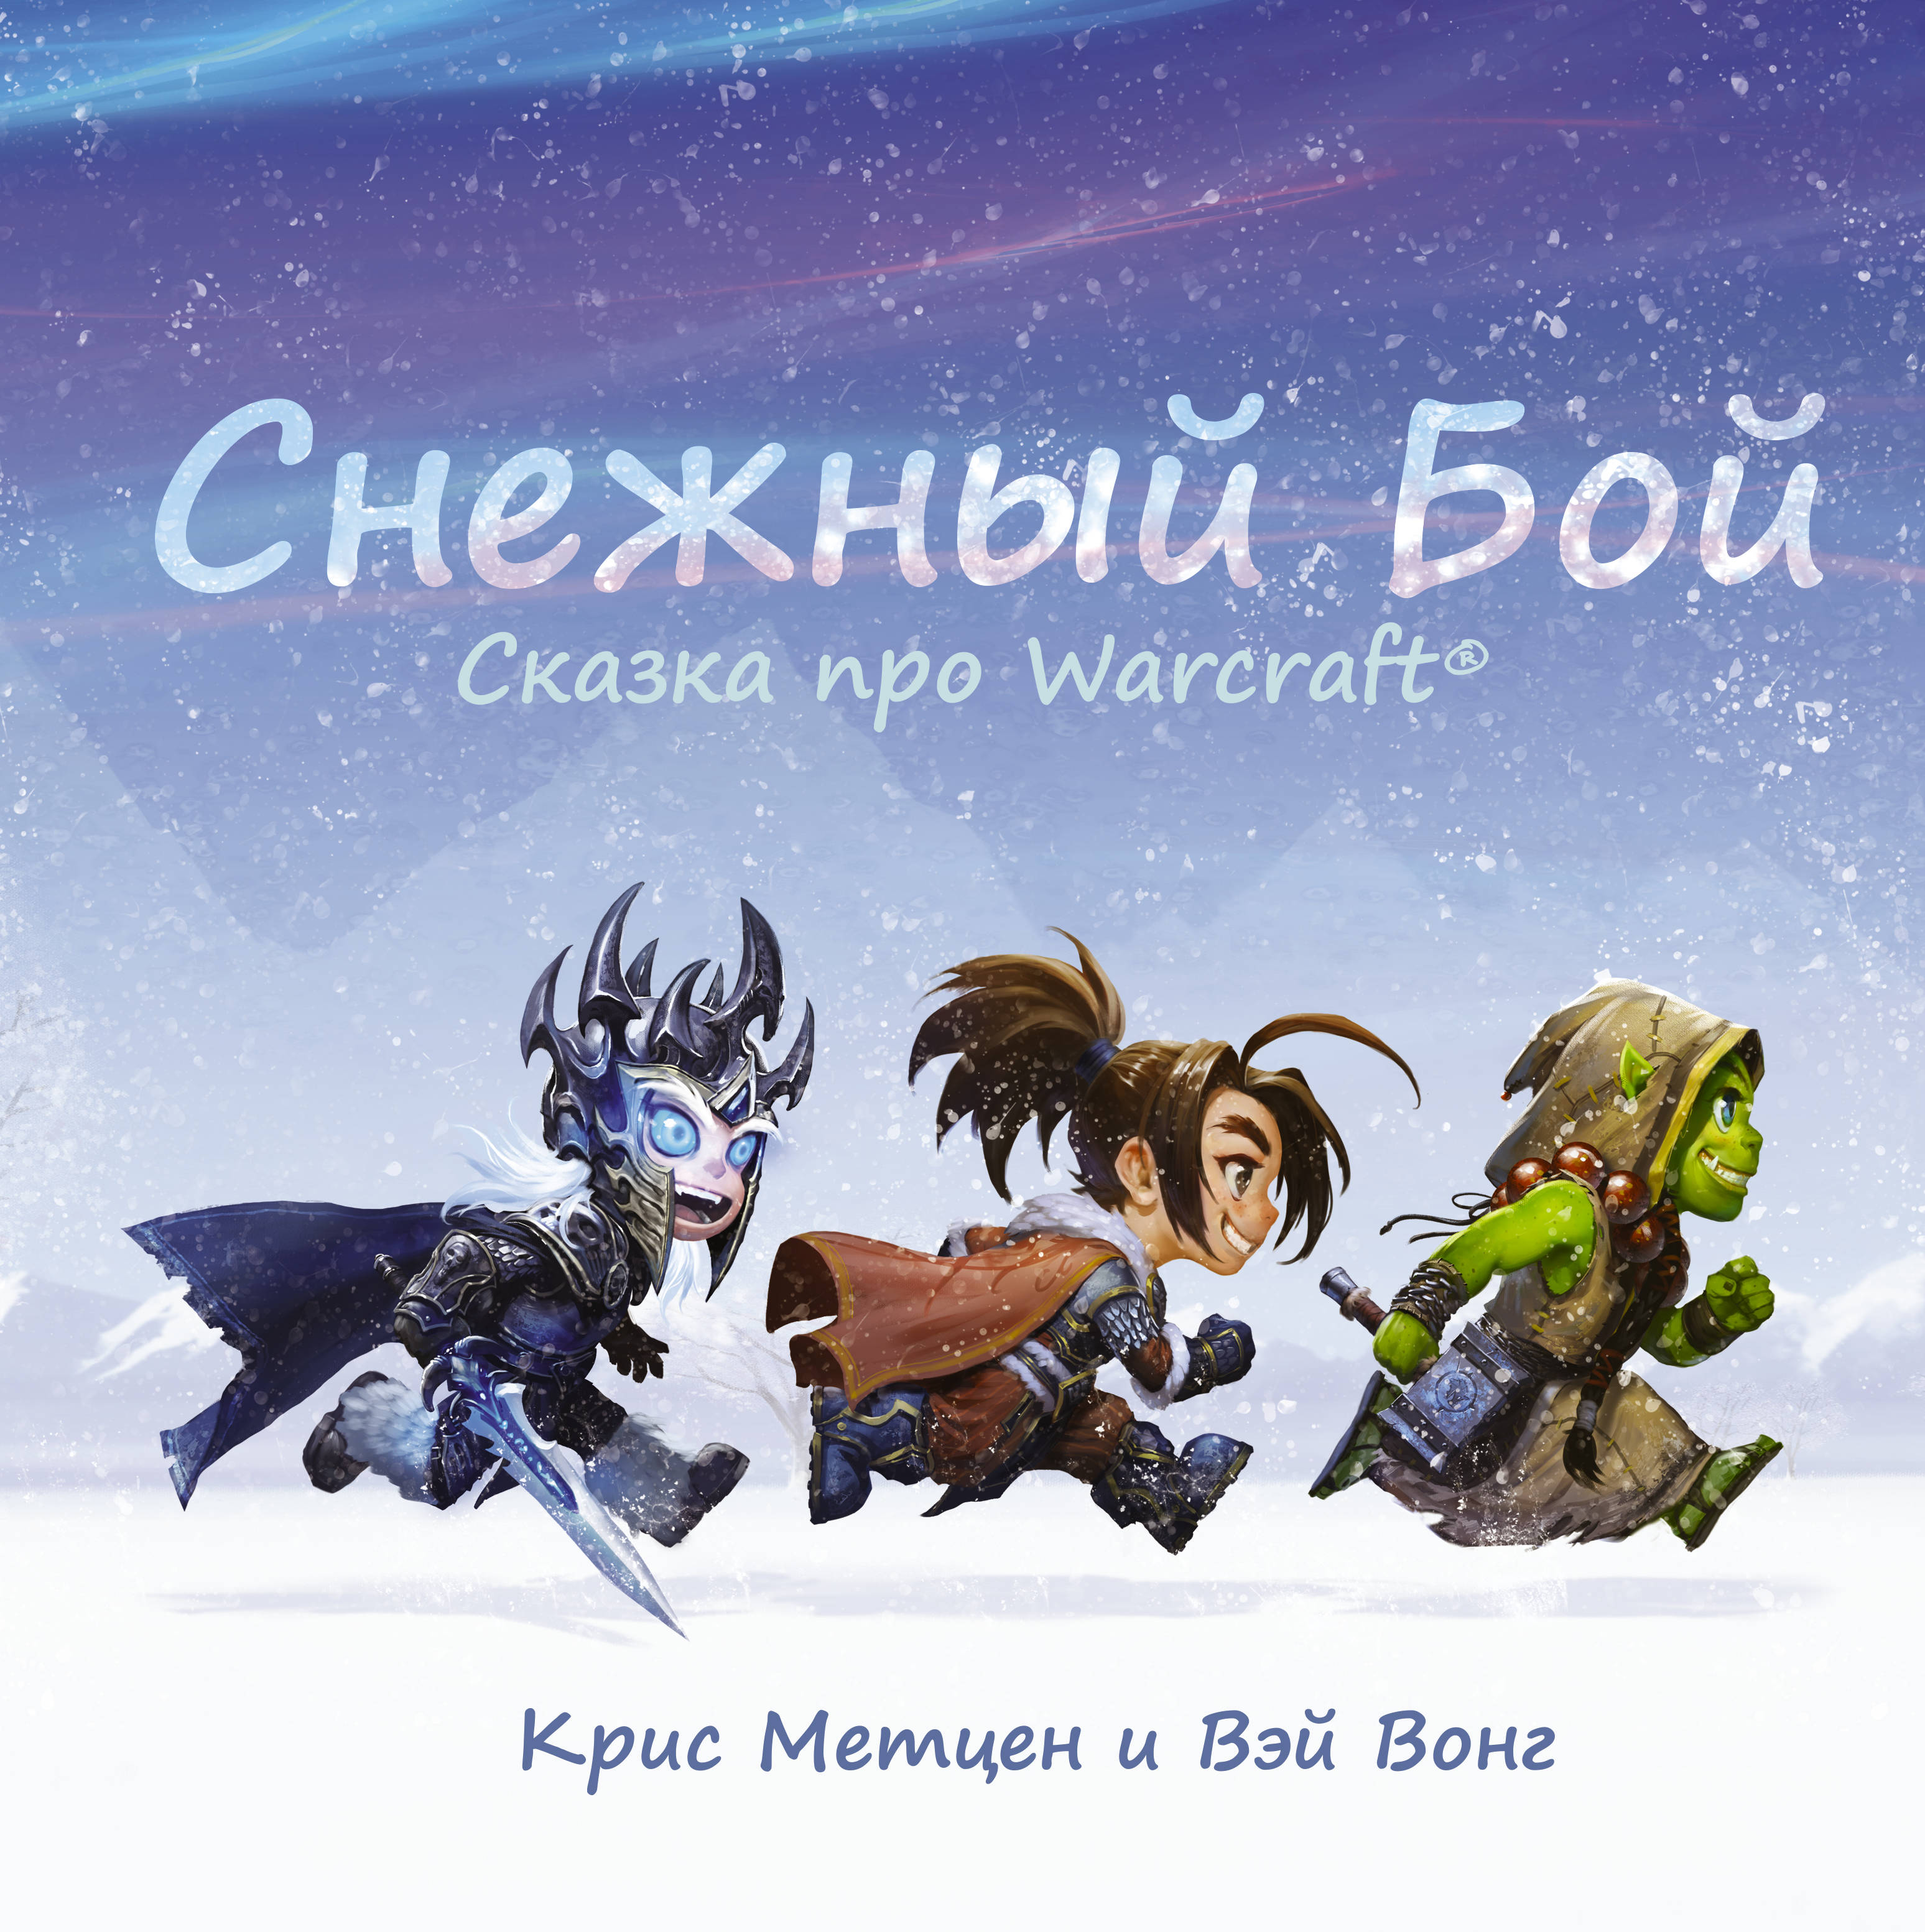 Метцен Крис, Вонг Вэй, Филиппова Анастасия - Снежный бой: Сказка про Warcraft